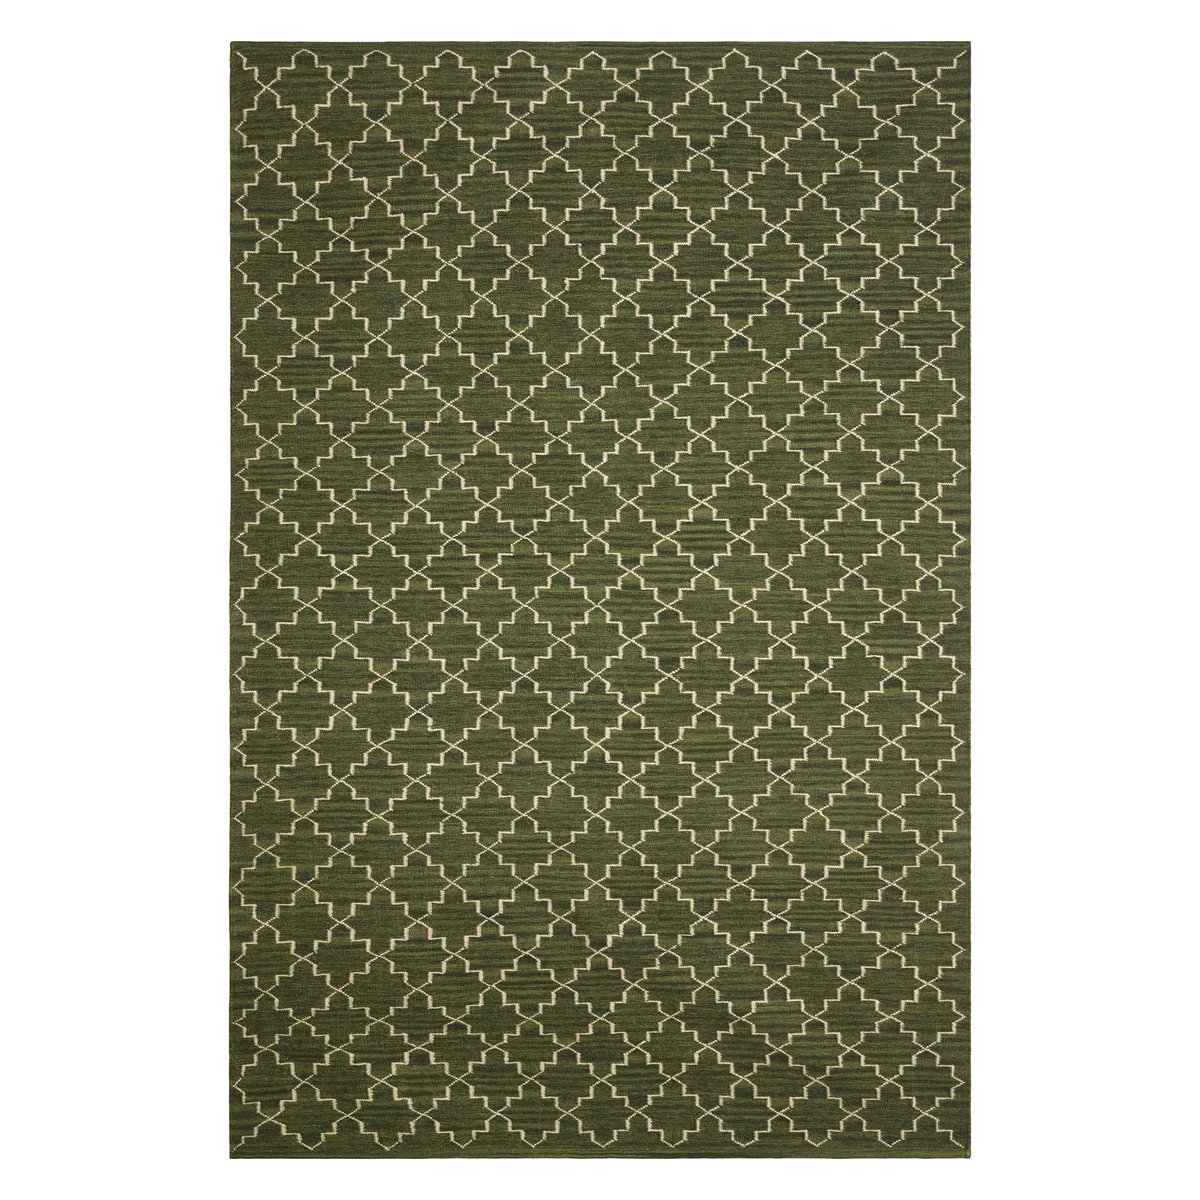 Chhatwal & Jonsson Nyt Geometrisk tæppe 180 x 272 cm Green melange/off white